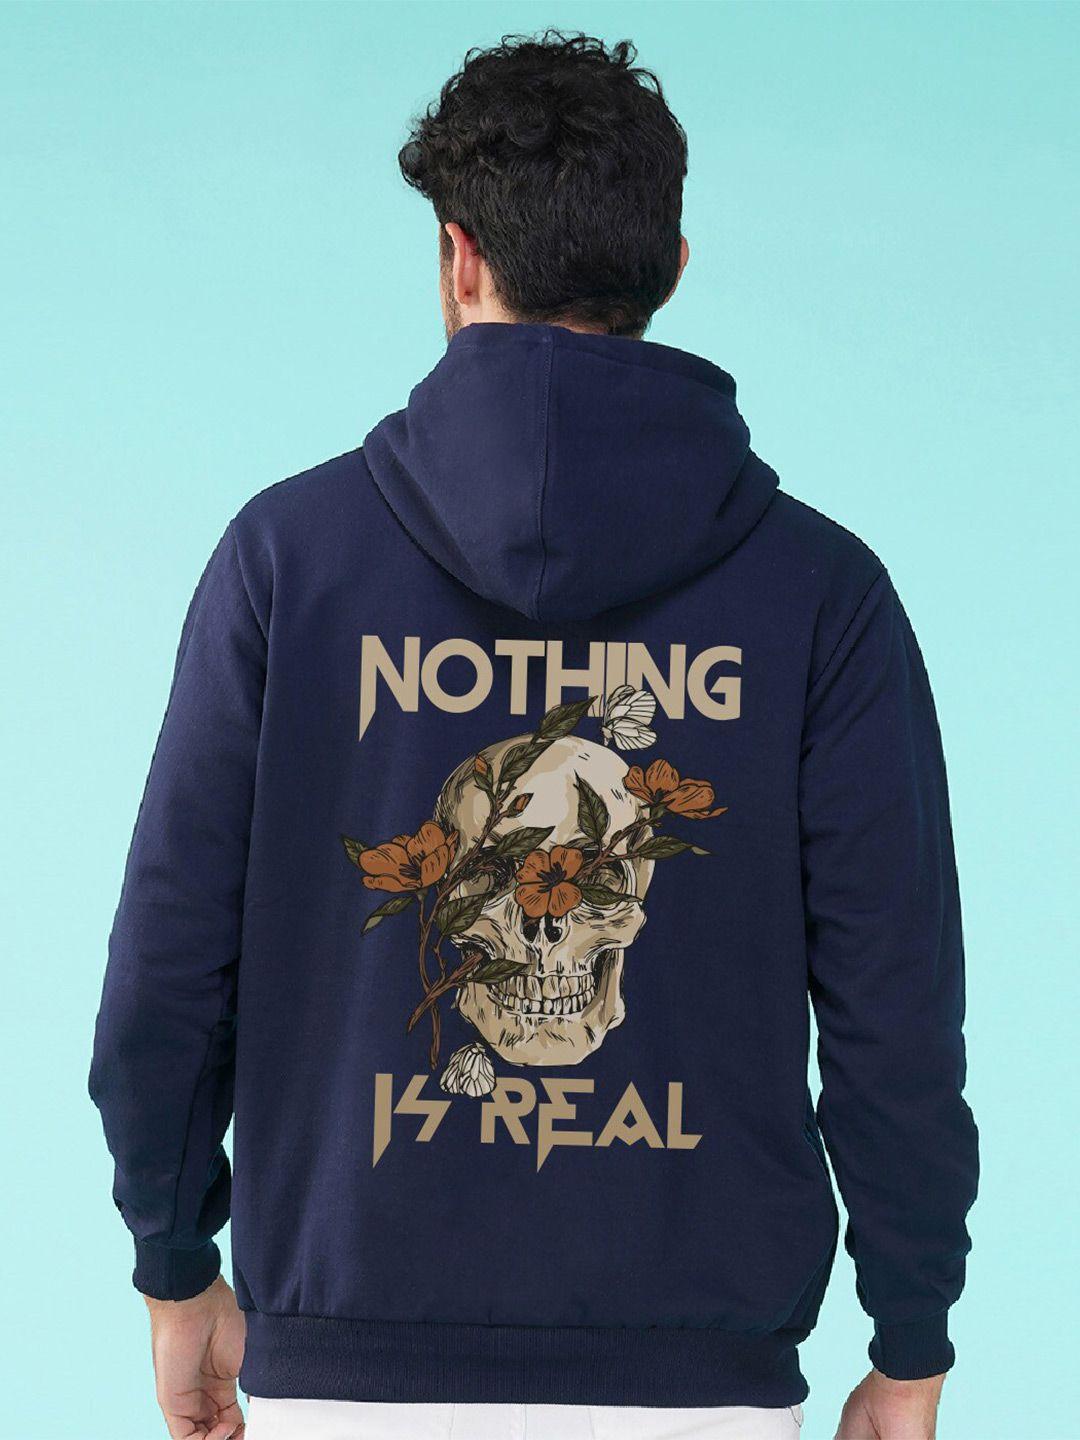 nusyl-graphic-printed-hooded-sweatshirt